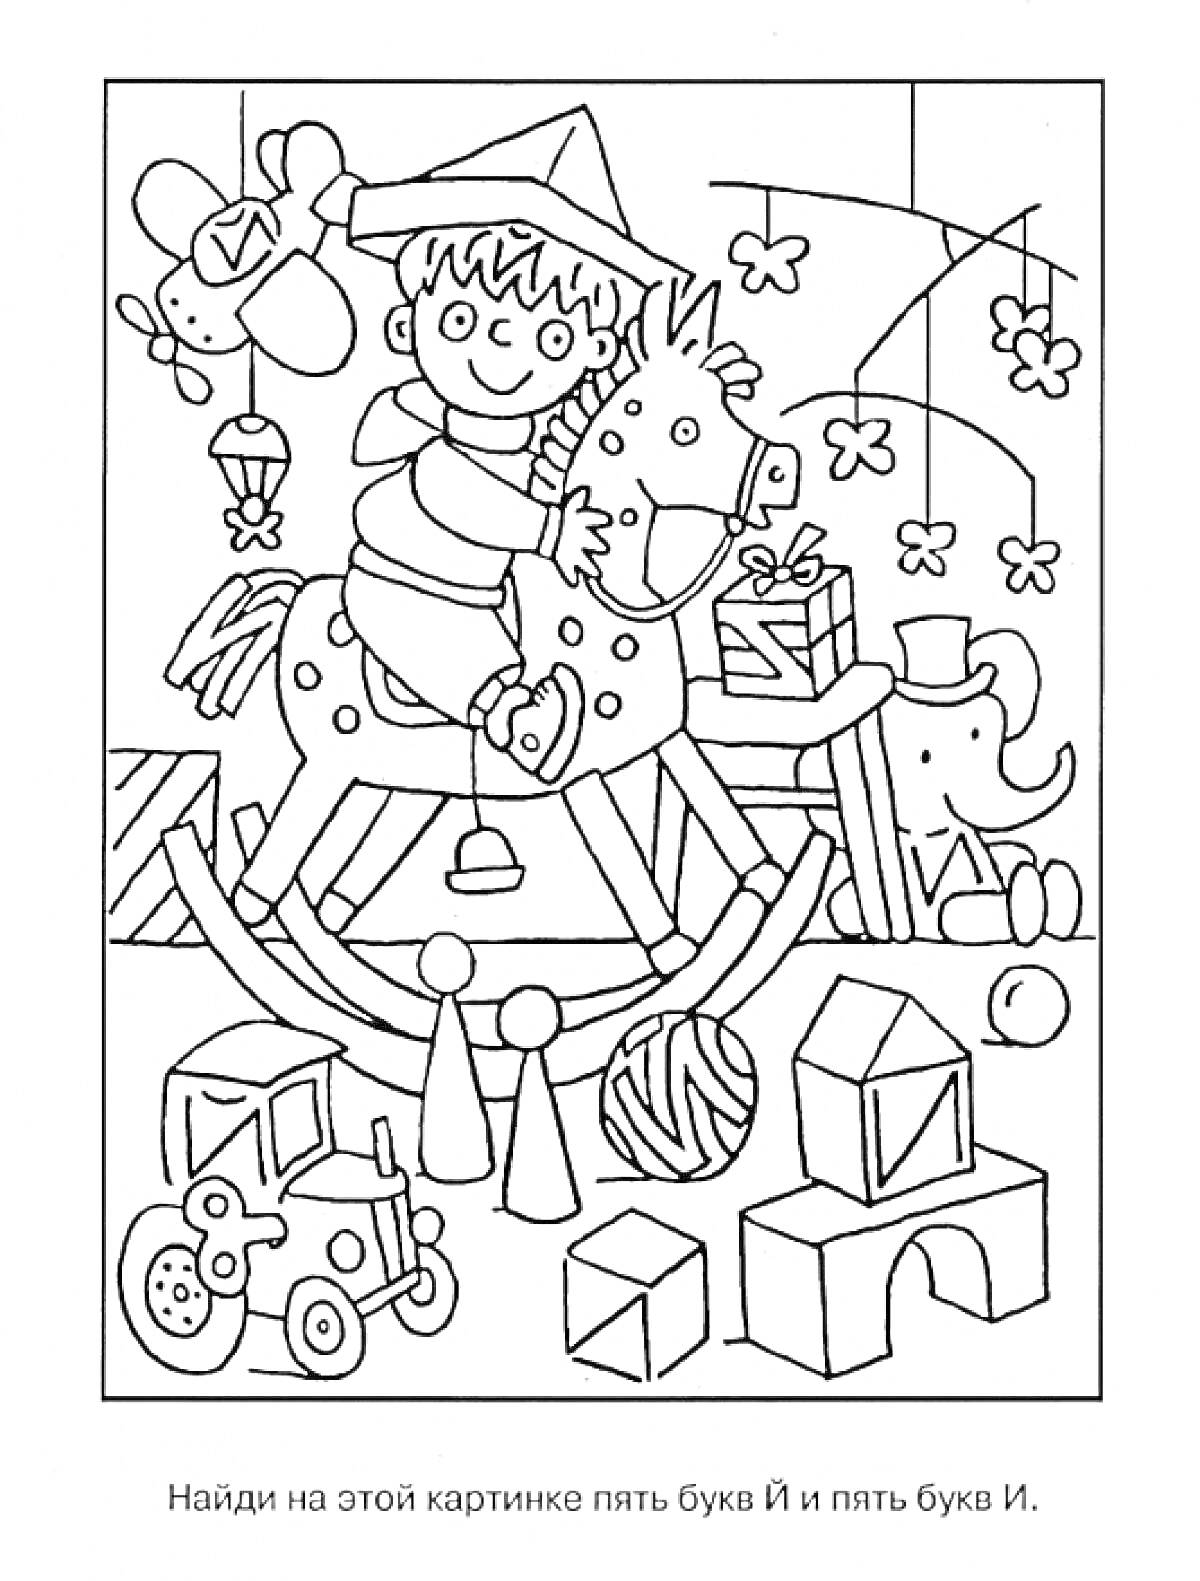 Раскраска Раскраска с игрушками, мальчик на лошадке-качалке, самолетик, набор кубиков, подарки, слон, цветочки.